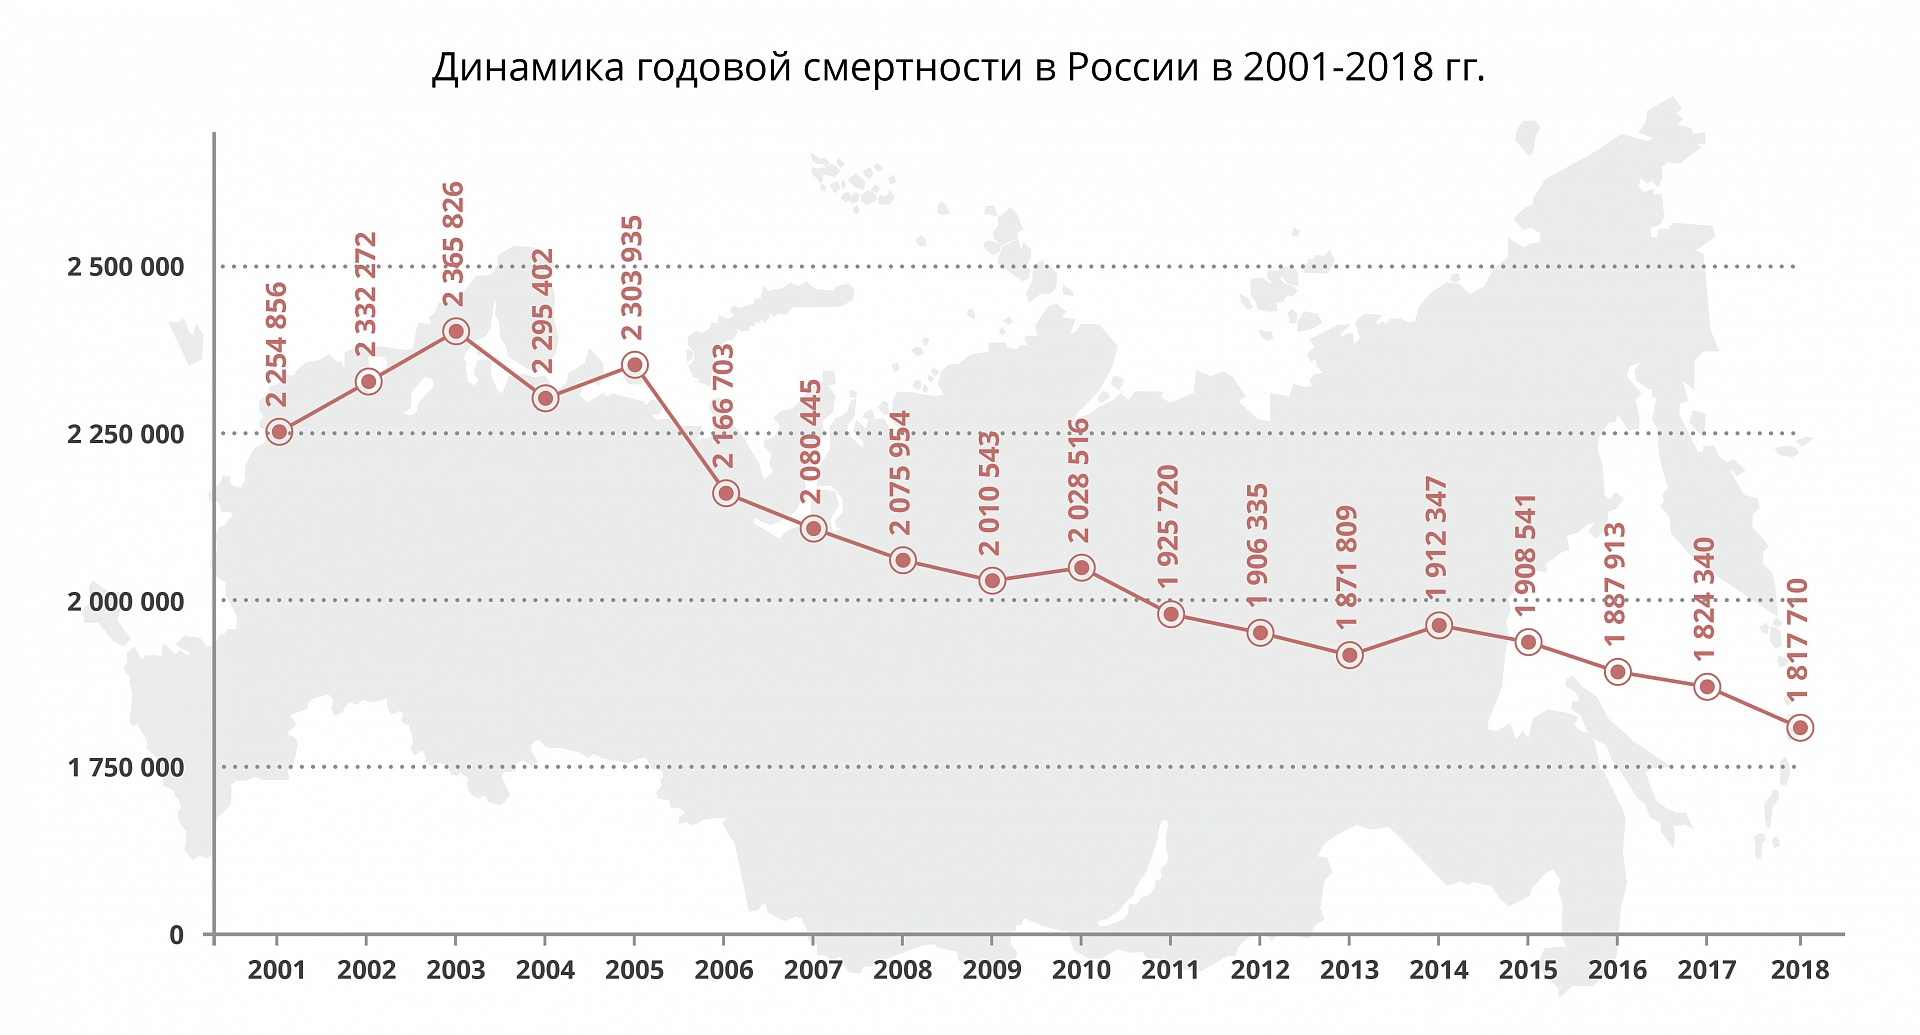 Смертность и рождаемость в 2018 г. по субъектам России